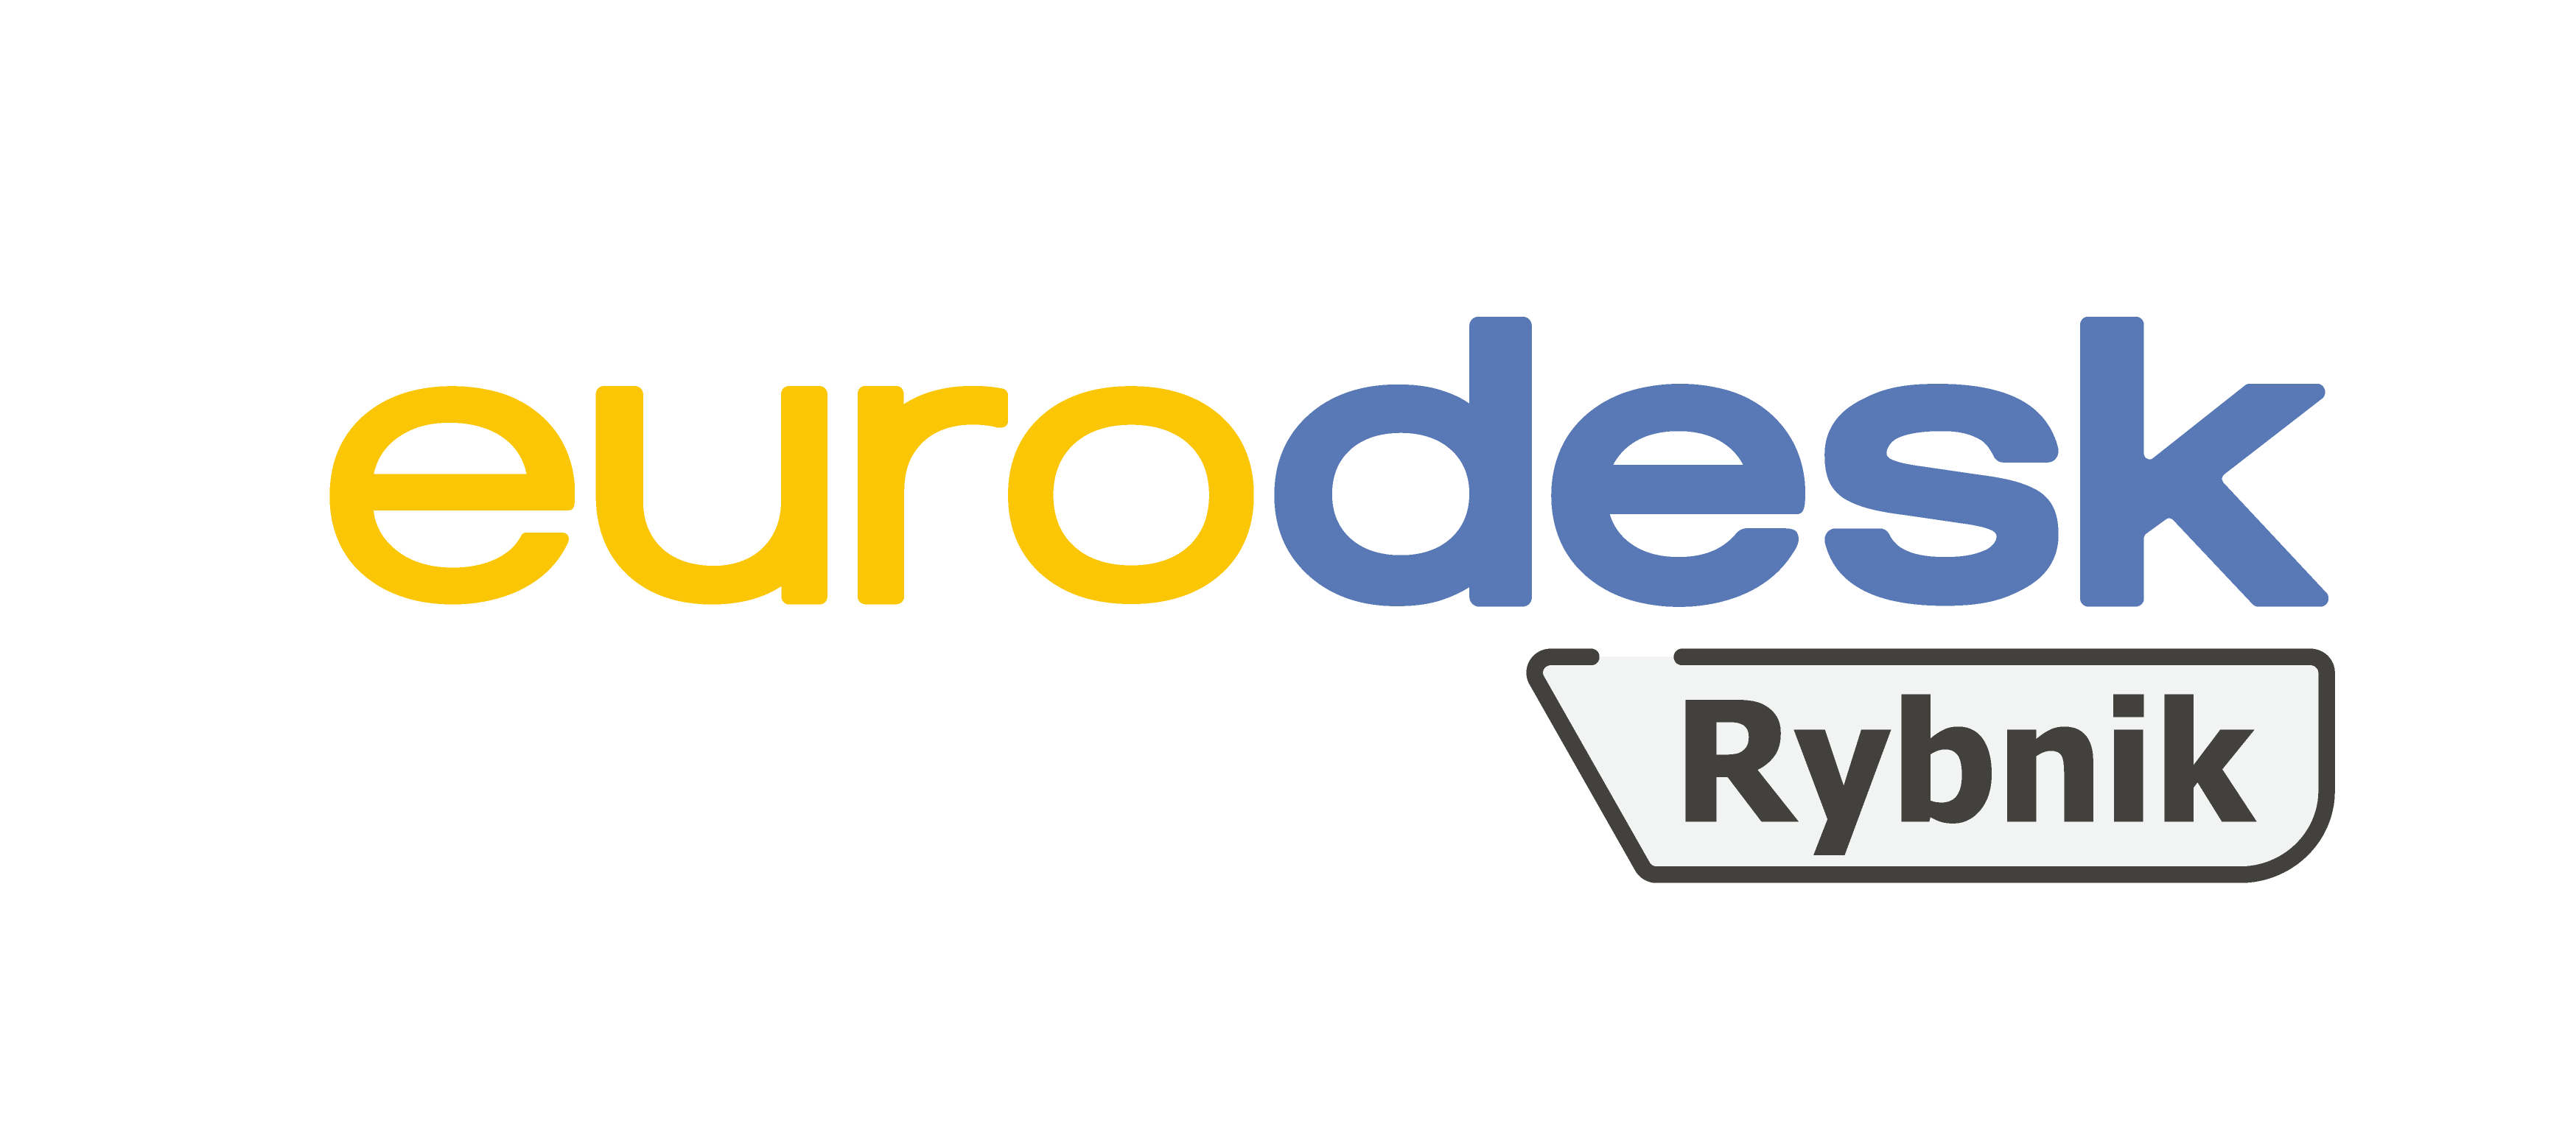 Eurodesk Rybnik